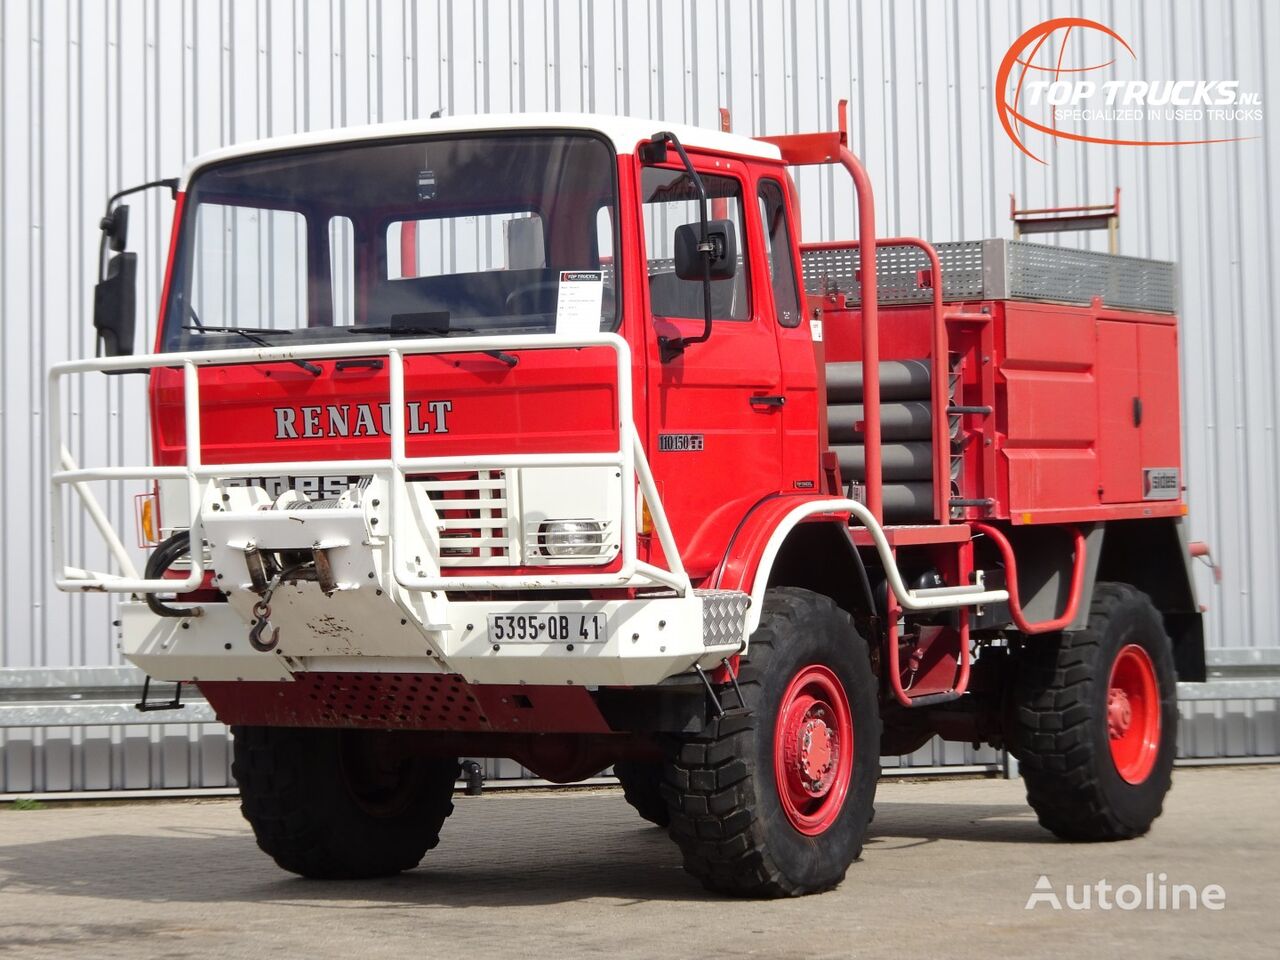 Renault 110-150 4x4 -Feuerwehr, Fire brigade -3.000 ltr watertank - 5t.  brandweerwagen